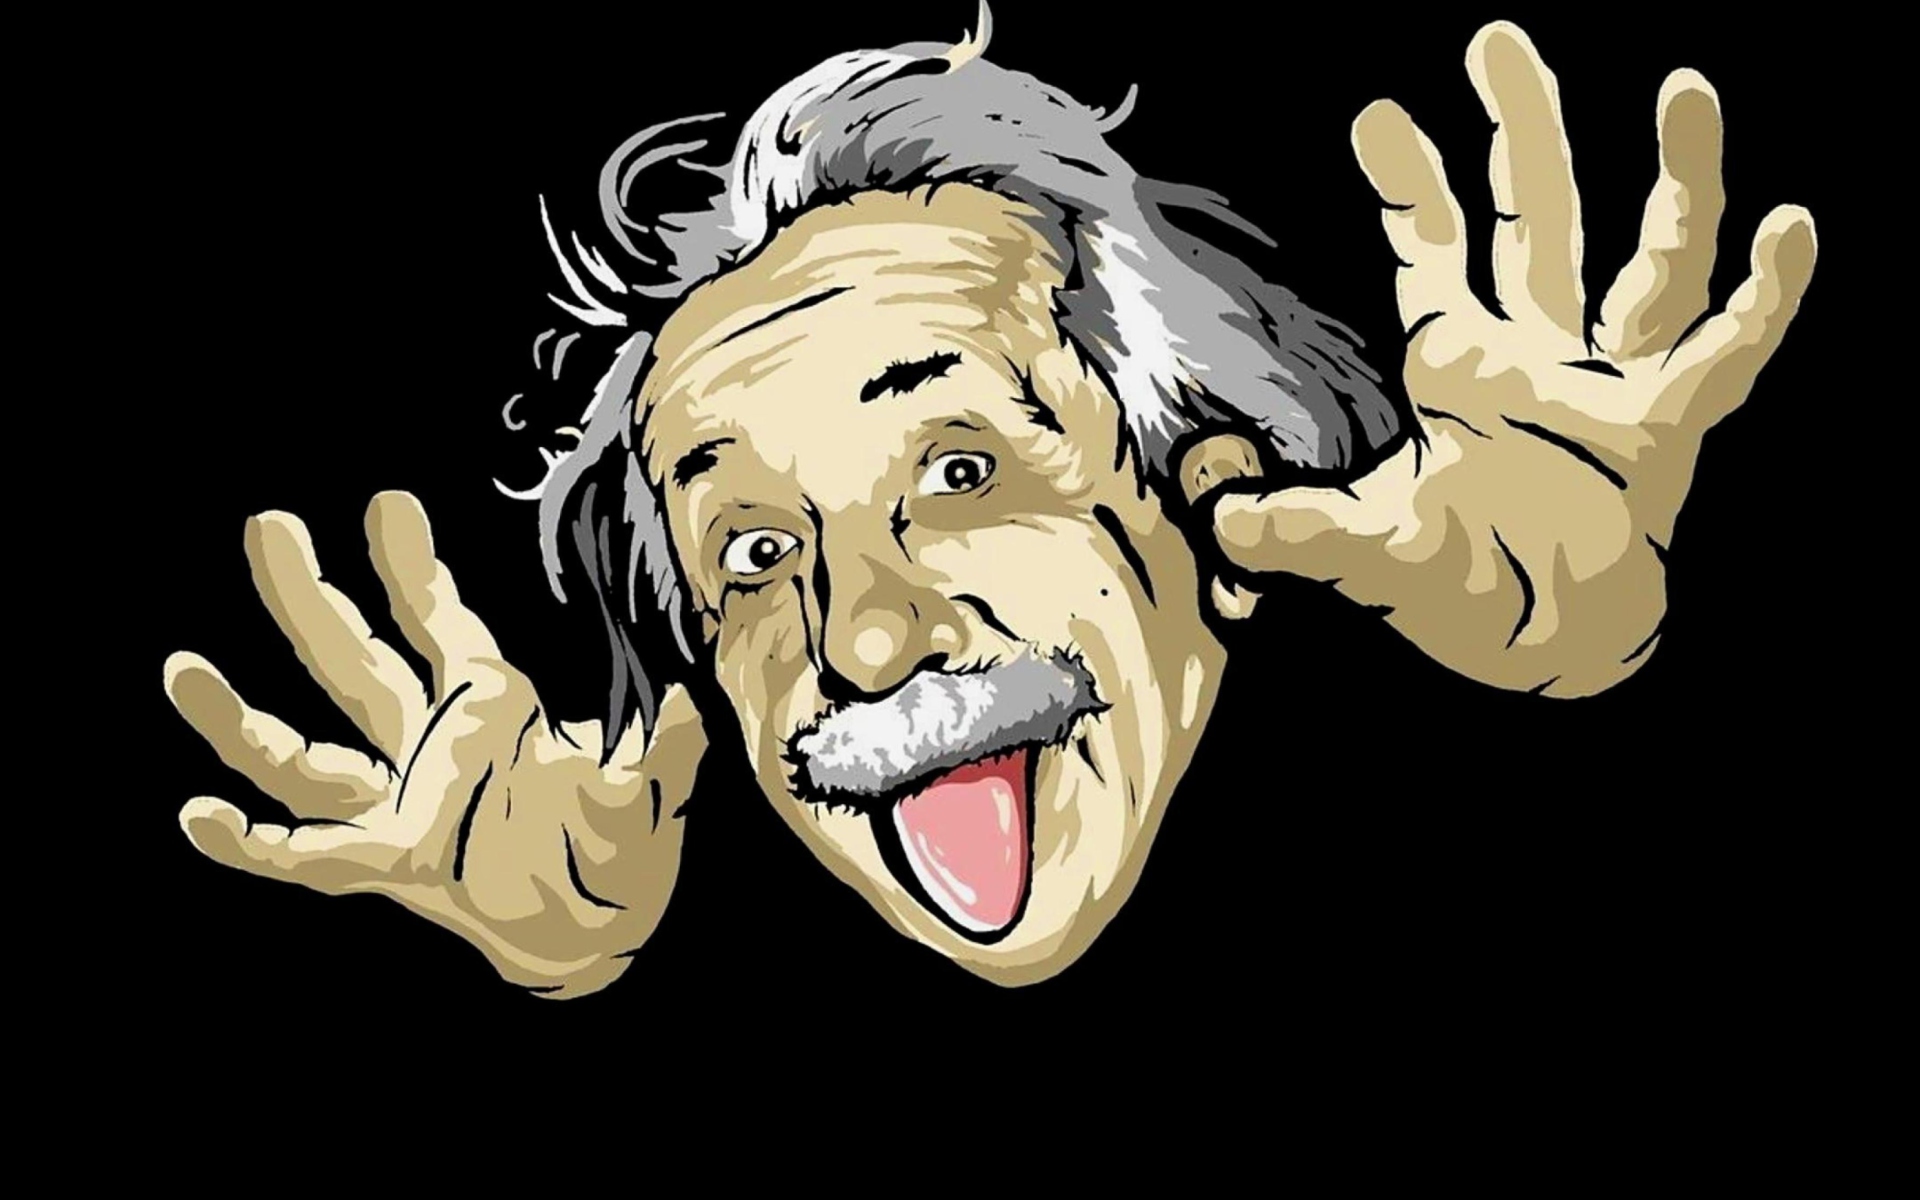 Albert Einstein Image HD Wallpaper And